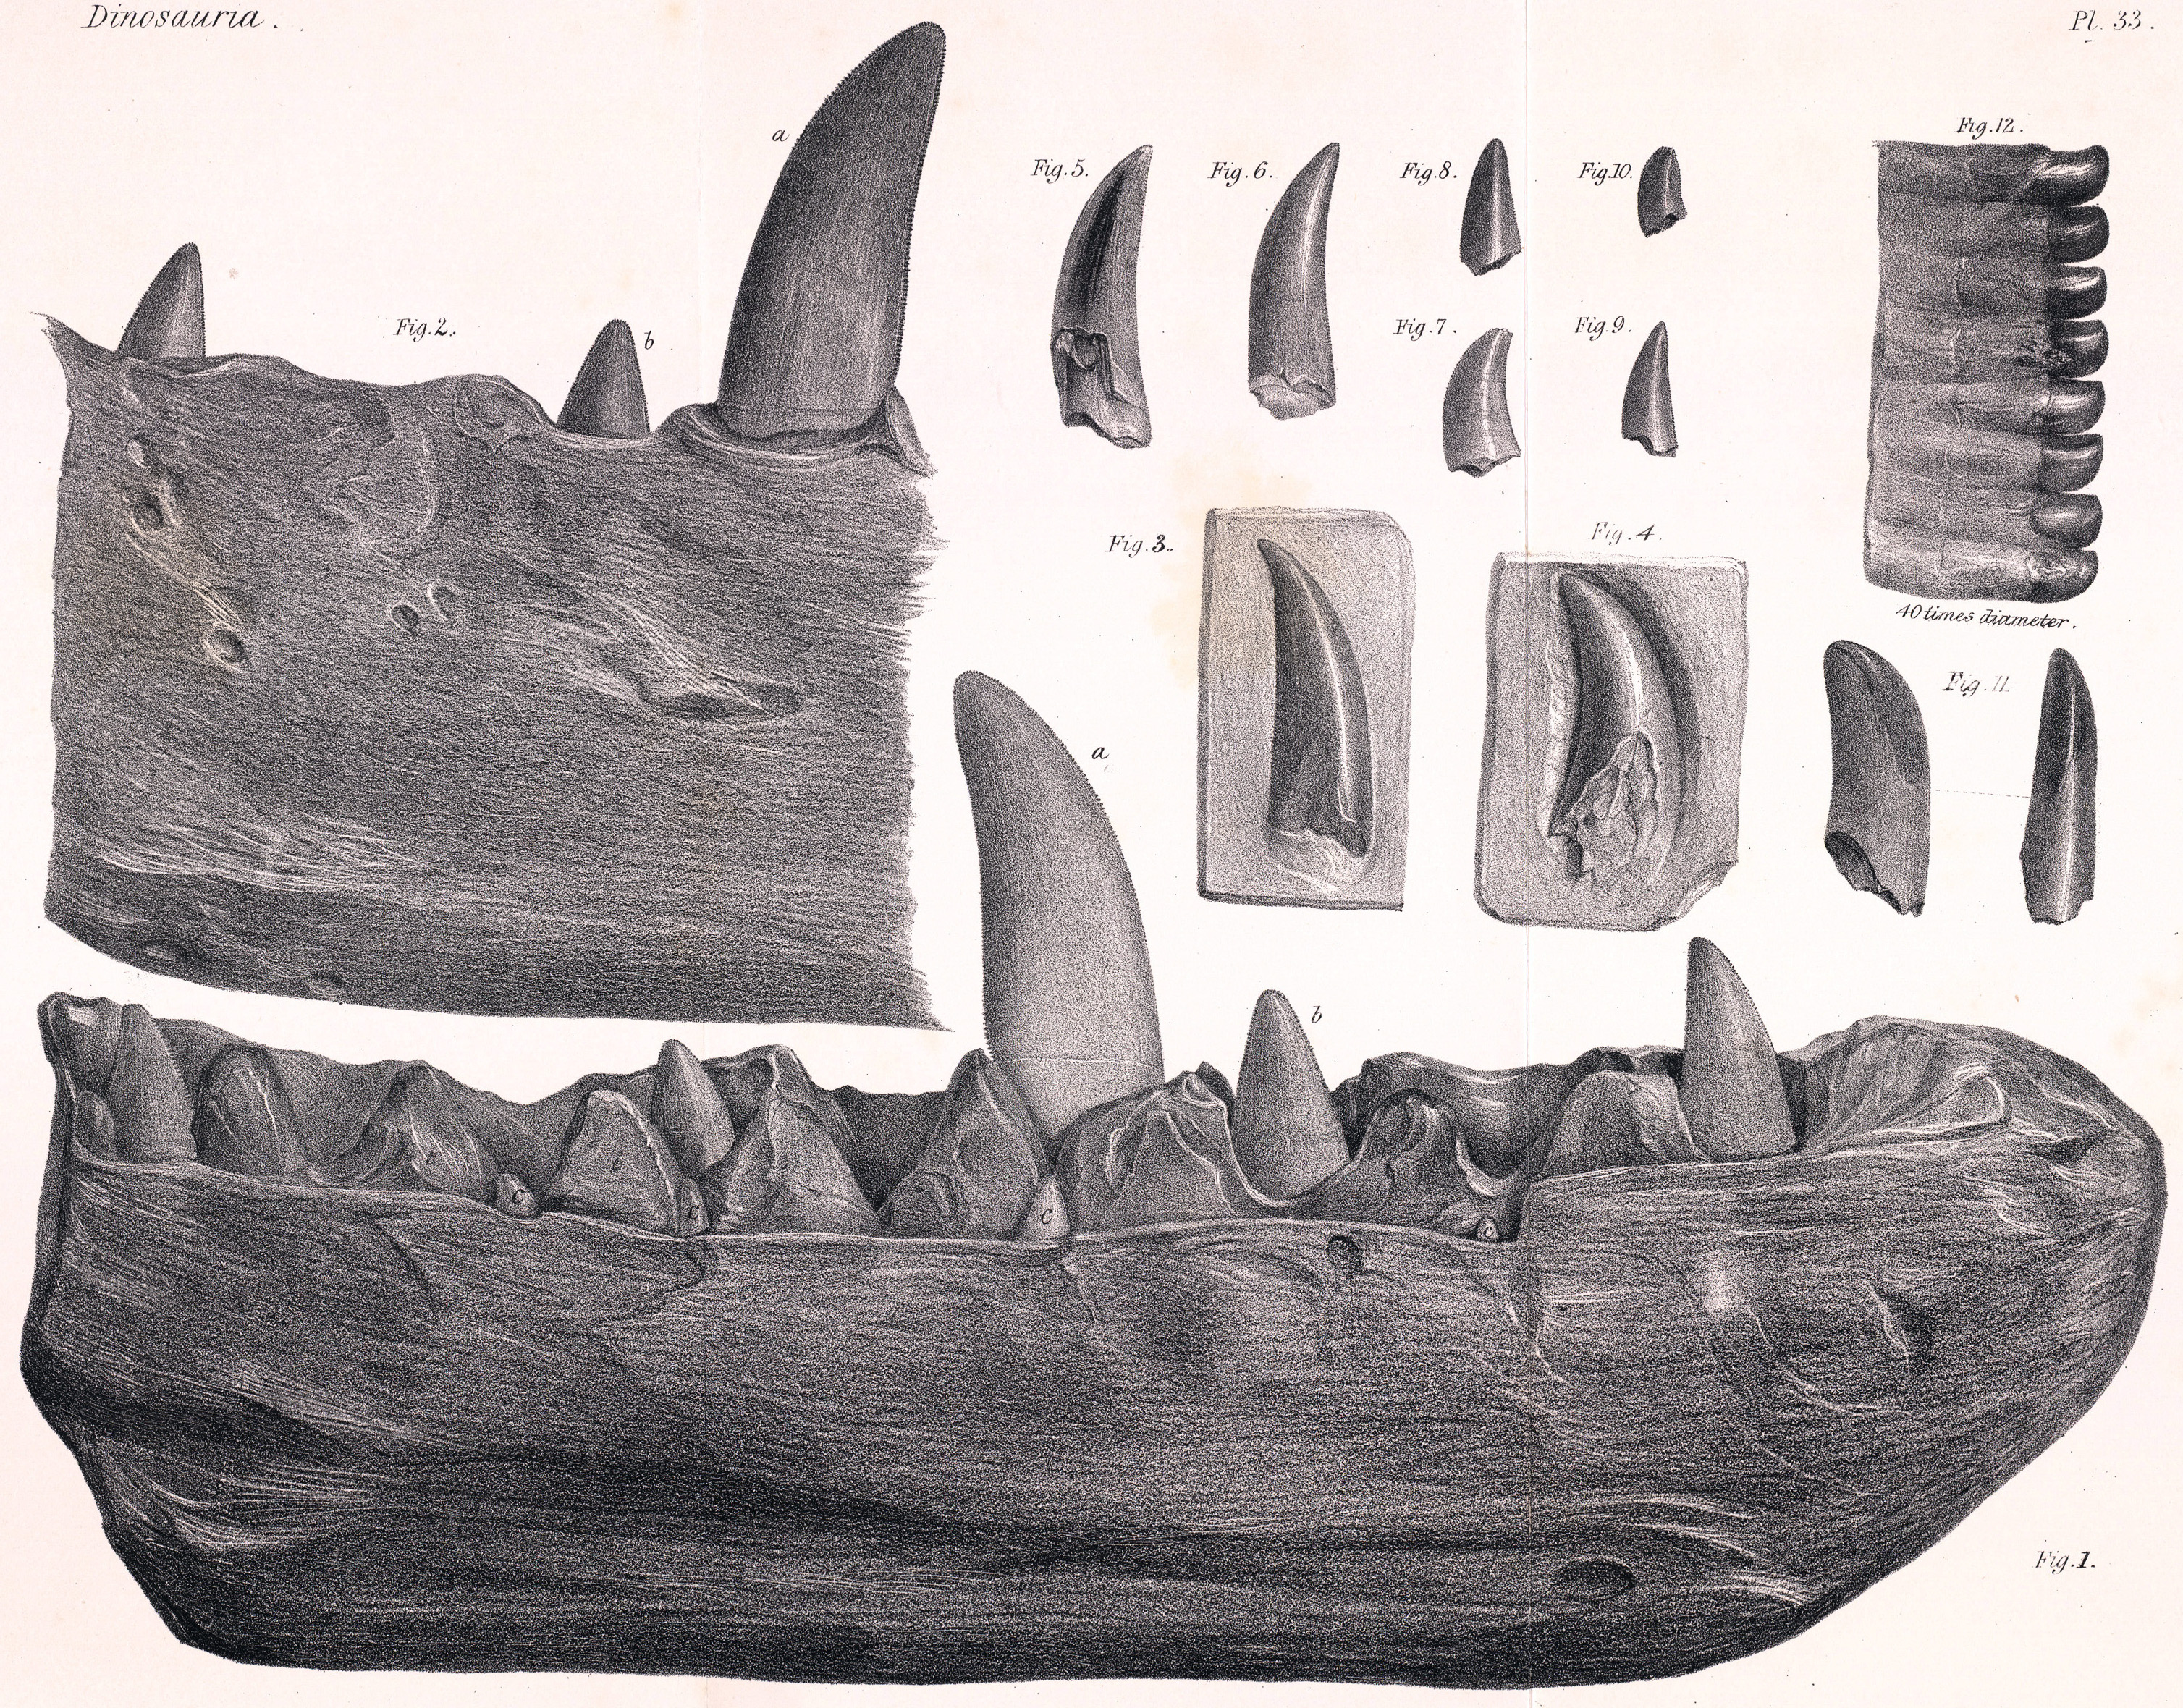 Nákres zubů a fragmentu spodní čelisti megalosaura, objevené roku 1797 ve Stonesfield Slate. Dnes se jedná o exemplář významný nejen z paleontologického, ale v nemenší míře i z historického hlediska. Kredit: J. Erxleben, Wikipedie (volné dílo).